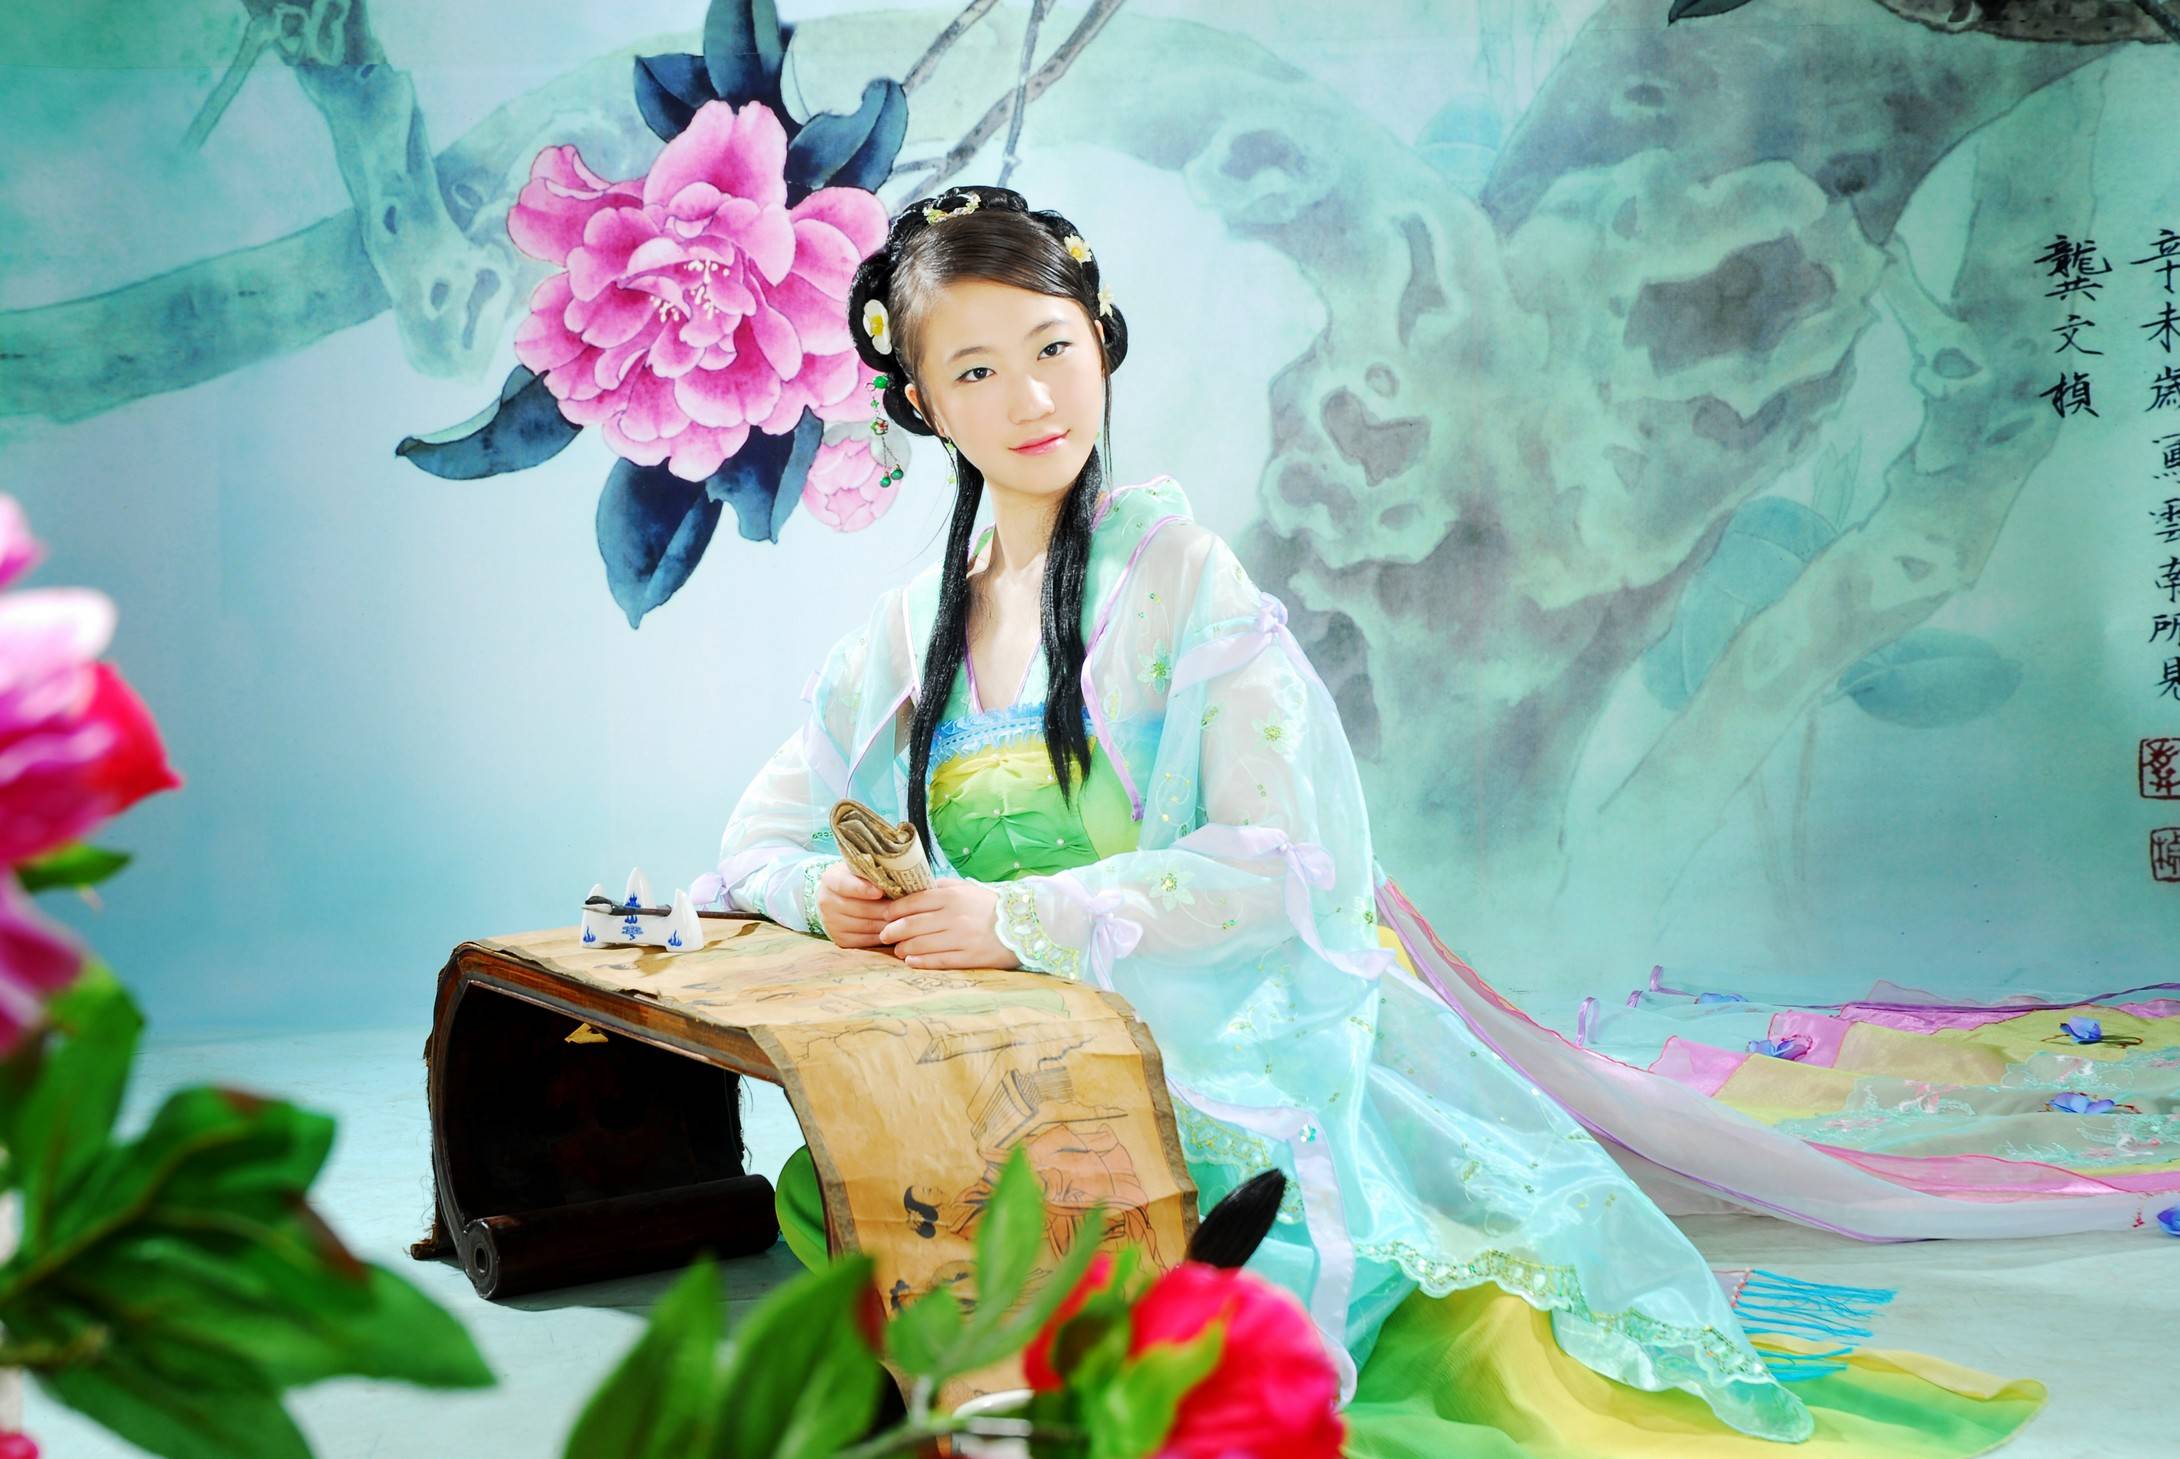 【2560x1600】中国古典美女高清壁纸_美女壁纸_图片之家